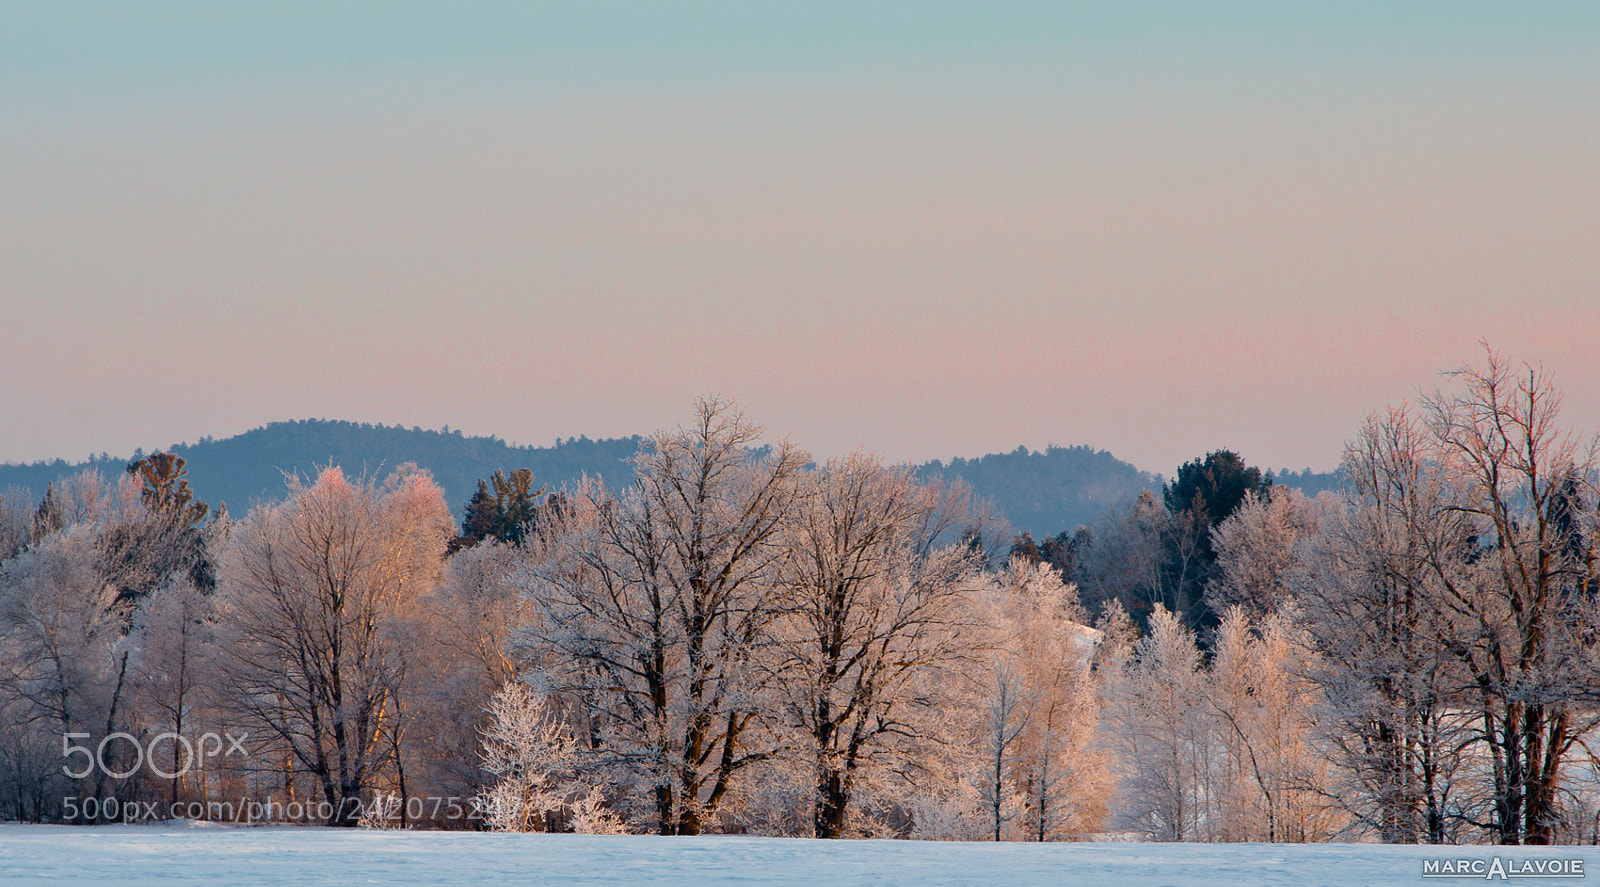 Pentax K-3 sample photo. Winter sunrise i photography